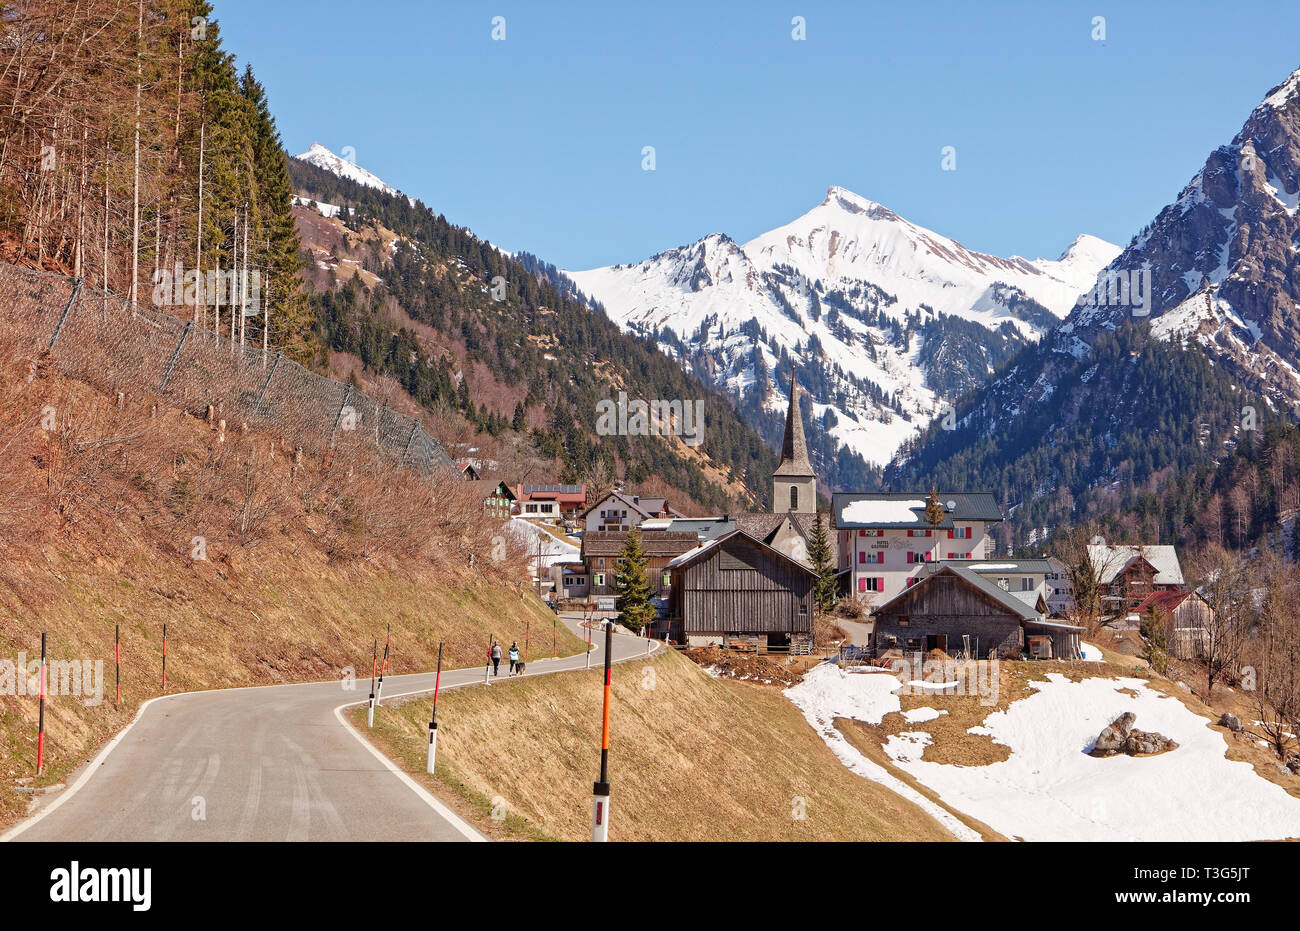 Buchboden, Vorarlberg, Austria - March 23, 2019: Buchboden mountain village in Walsertal valley - Bregenzerwald/Bregenz Forest, Vorarlberg, Austria Stock Photo